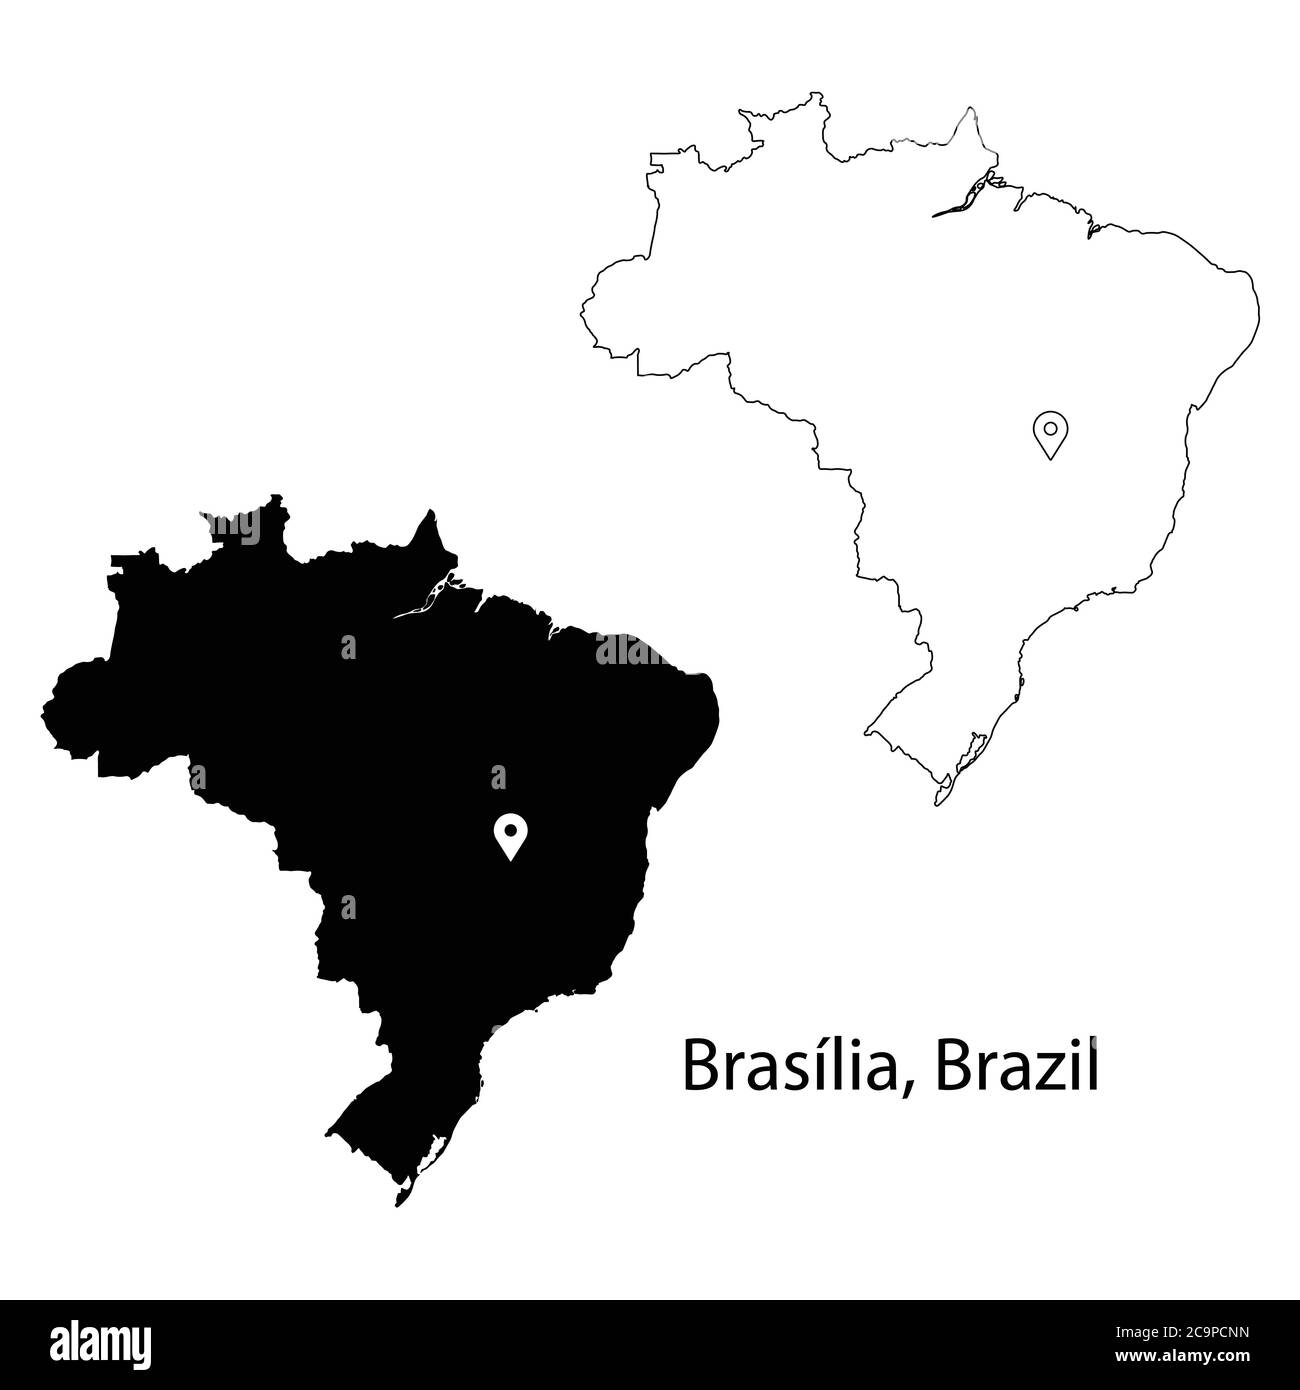 Brasilia Brasilien. Detaillierte Landkarte mit Lage Pin auf Hauptstadt. Schwarze Silhouette und Umrisskarten isoliert auf weißem Hintergrund. EPS-Vektor Stock Vektor